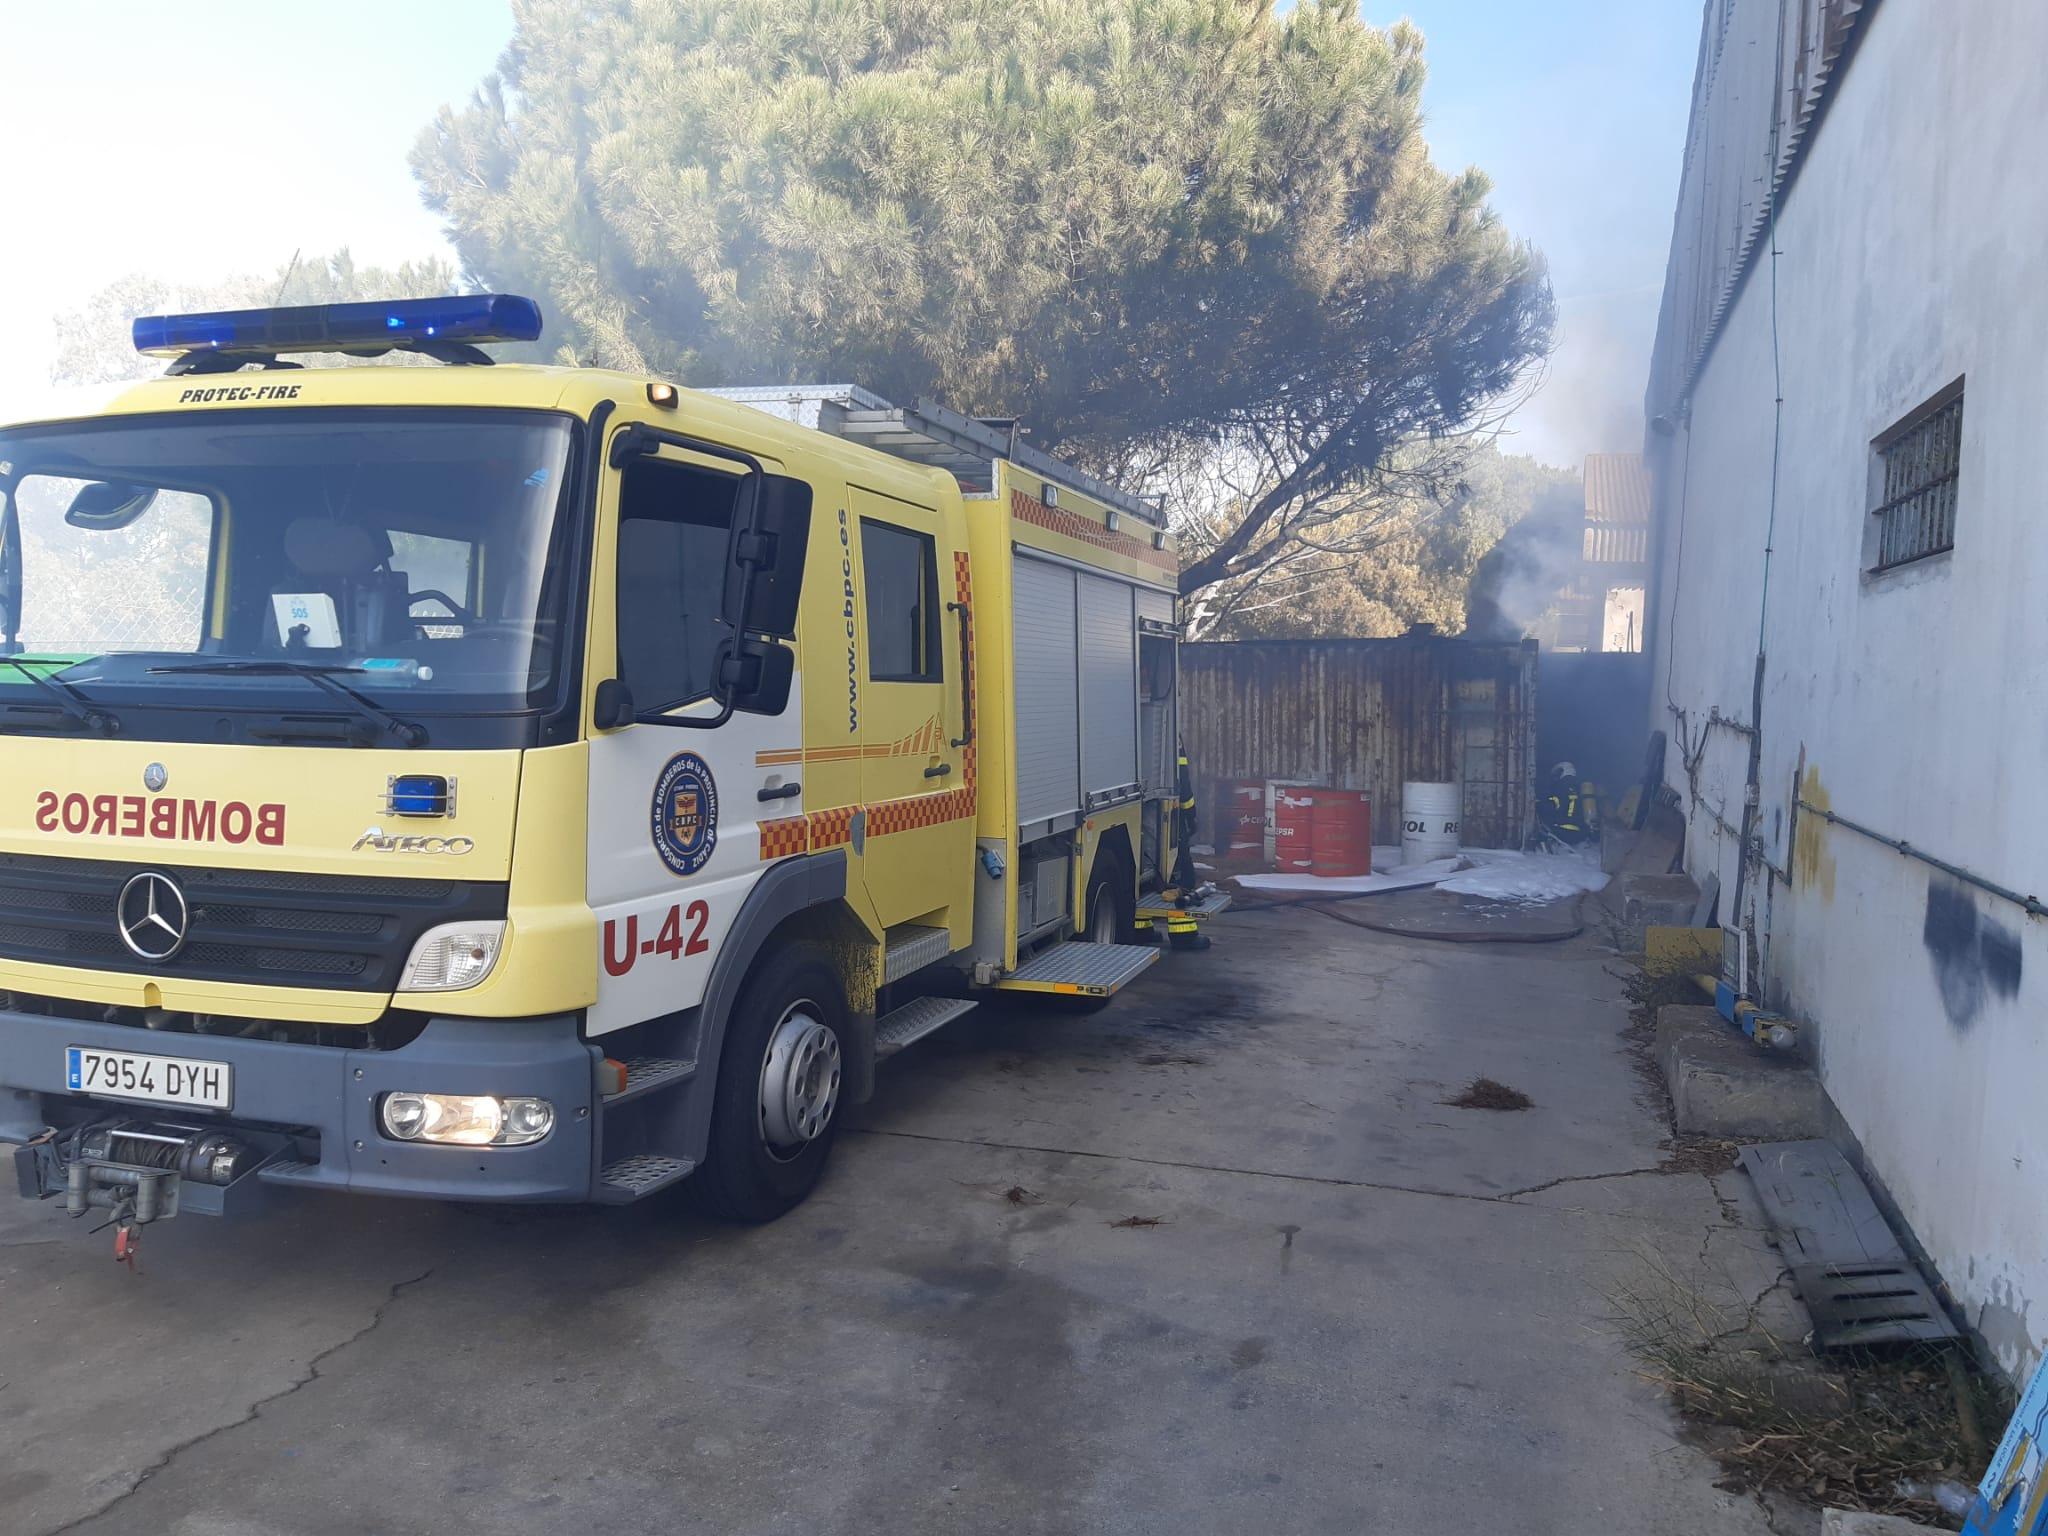 Bomberos del Parque de Jerez intervienen en un incendio de pastos y cañaveral en la carretera hacia Sanlúcar